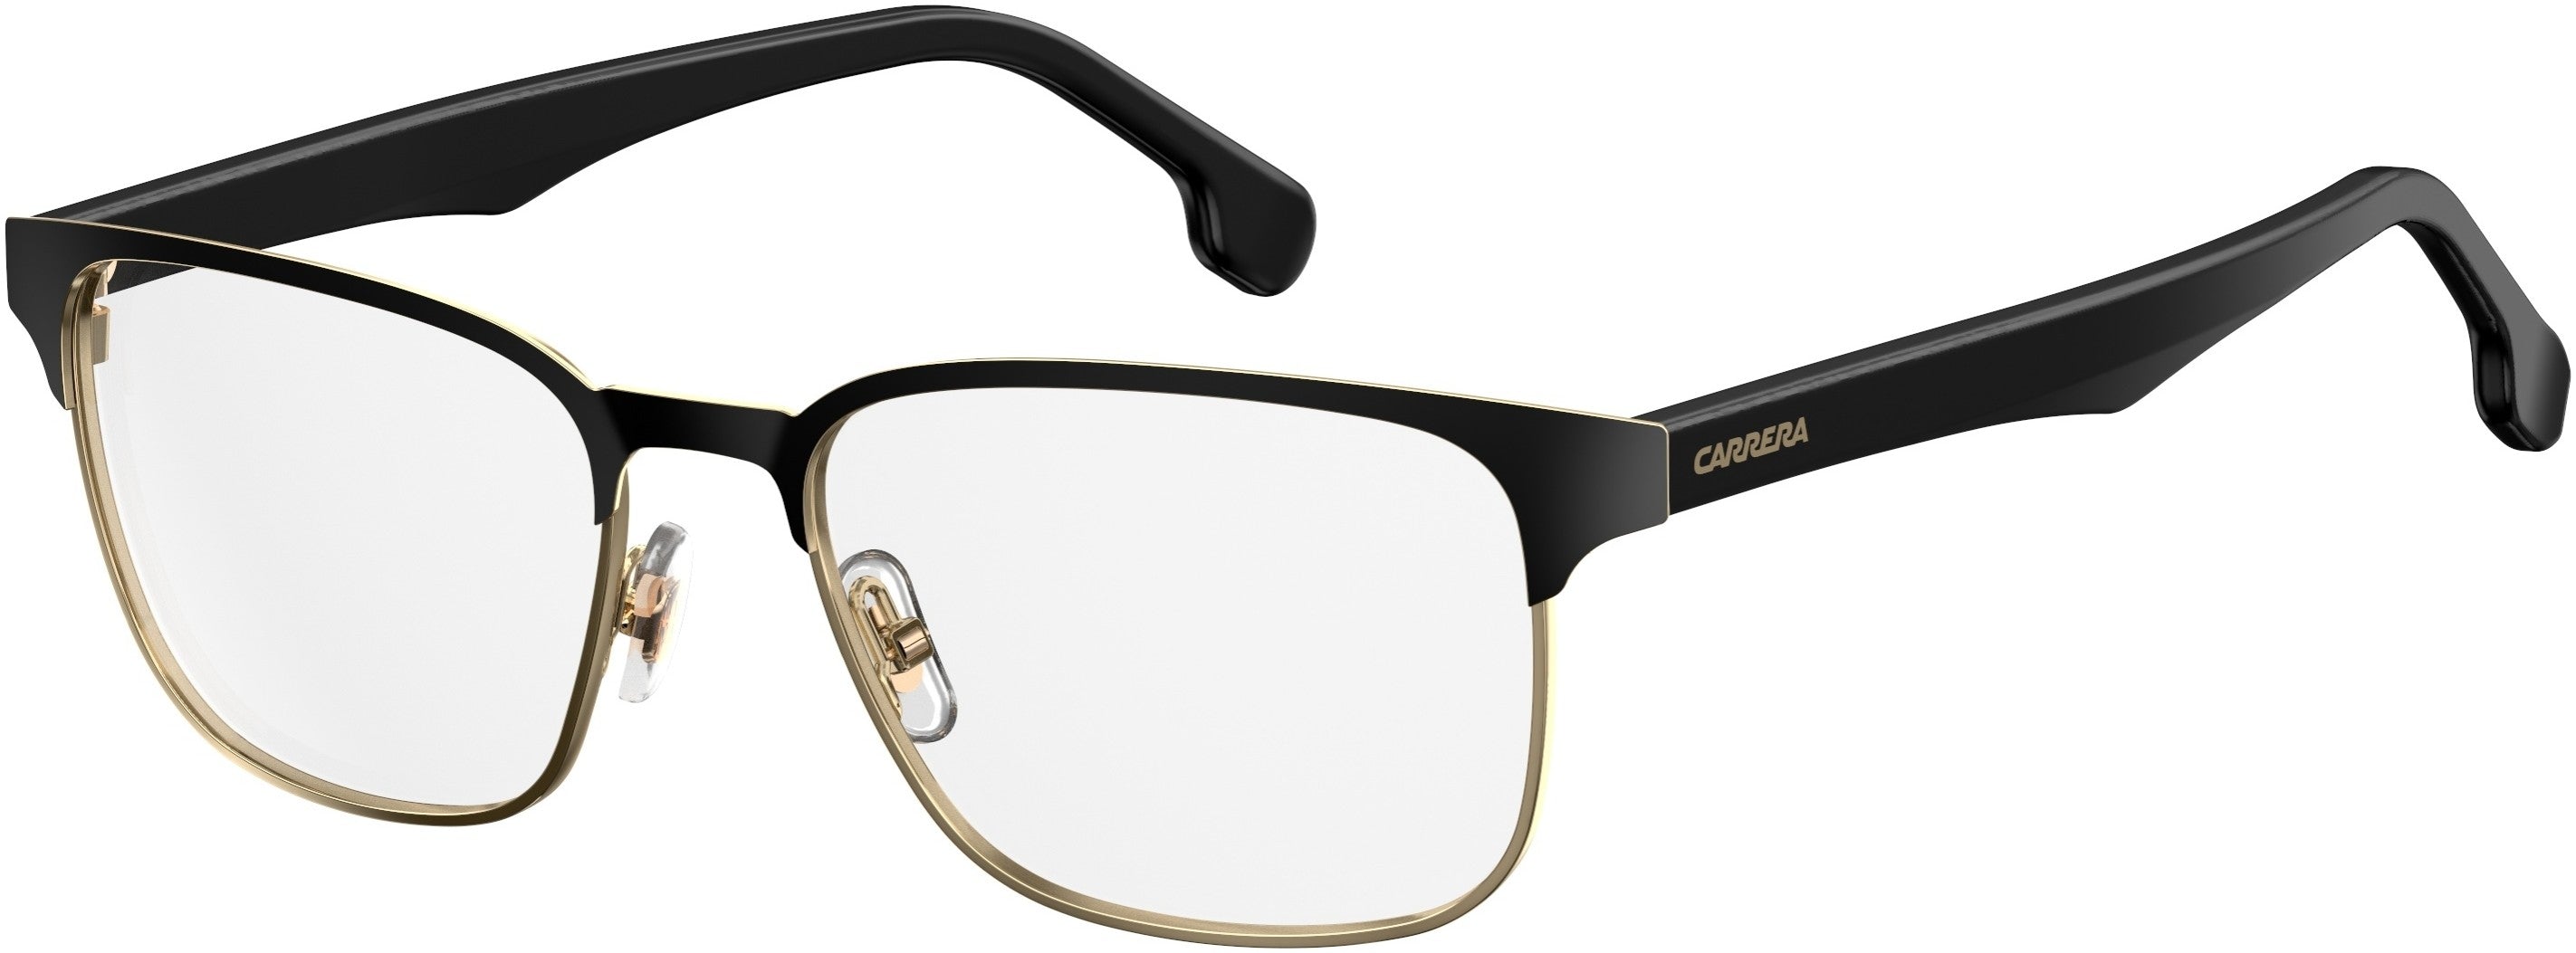  Carrera 138/V Rectangular Eyeglasses 0807-0807  Black (00 Demo Lens)